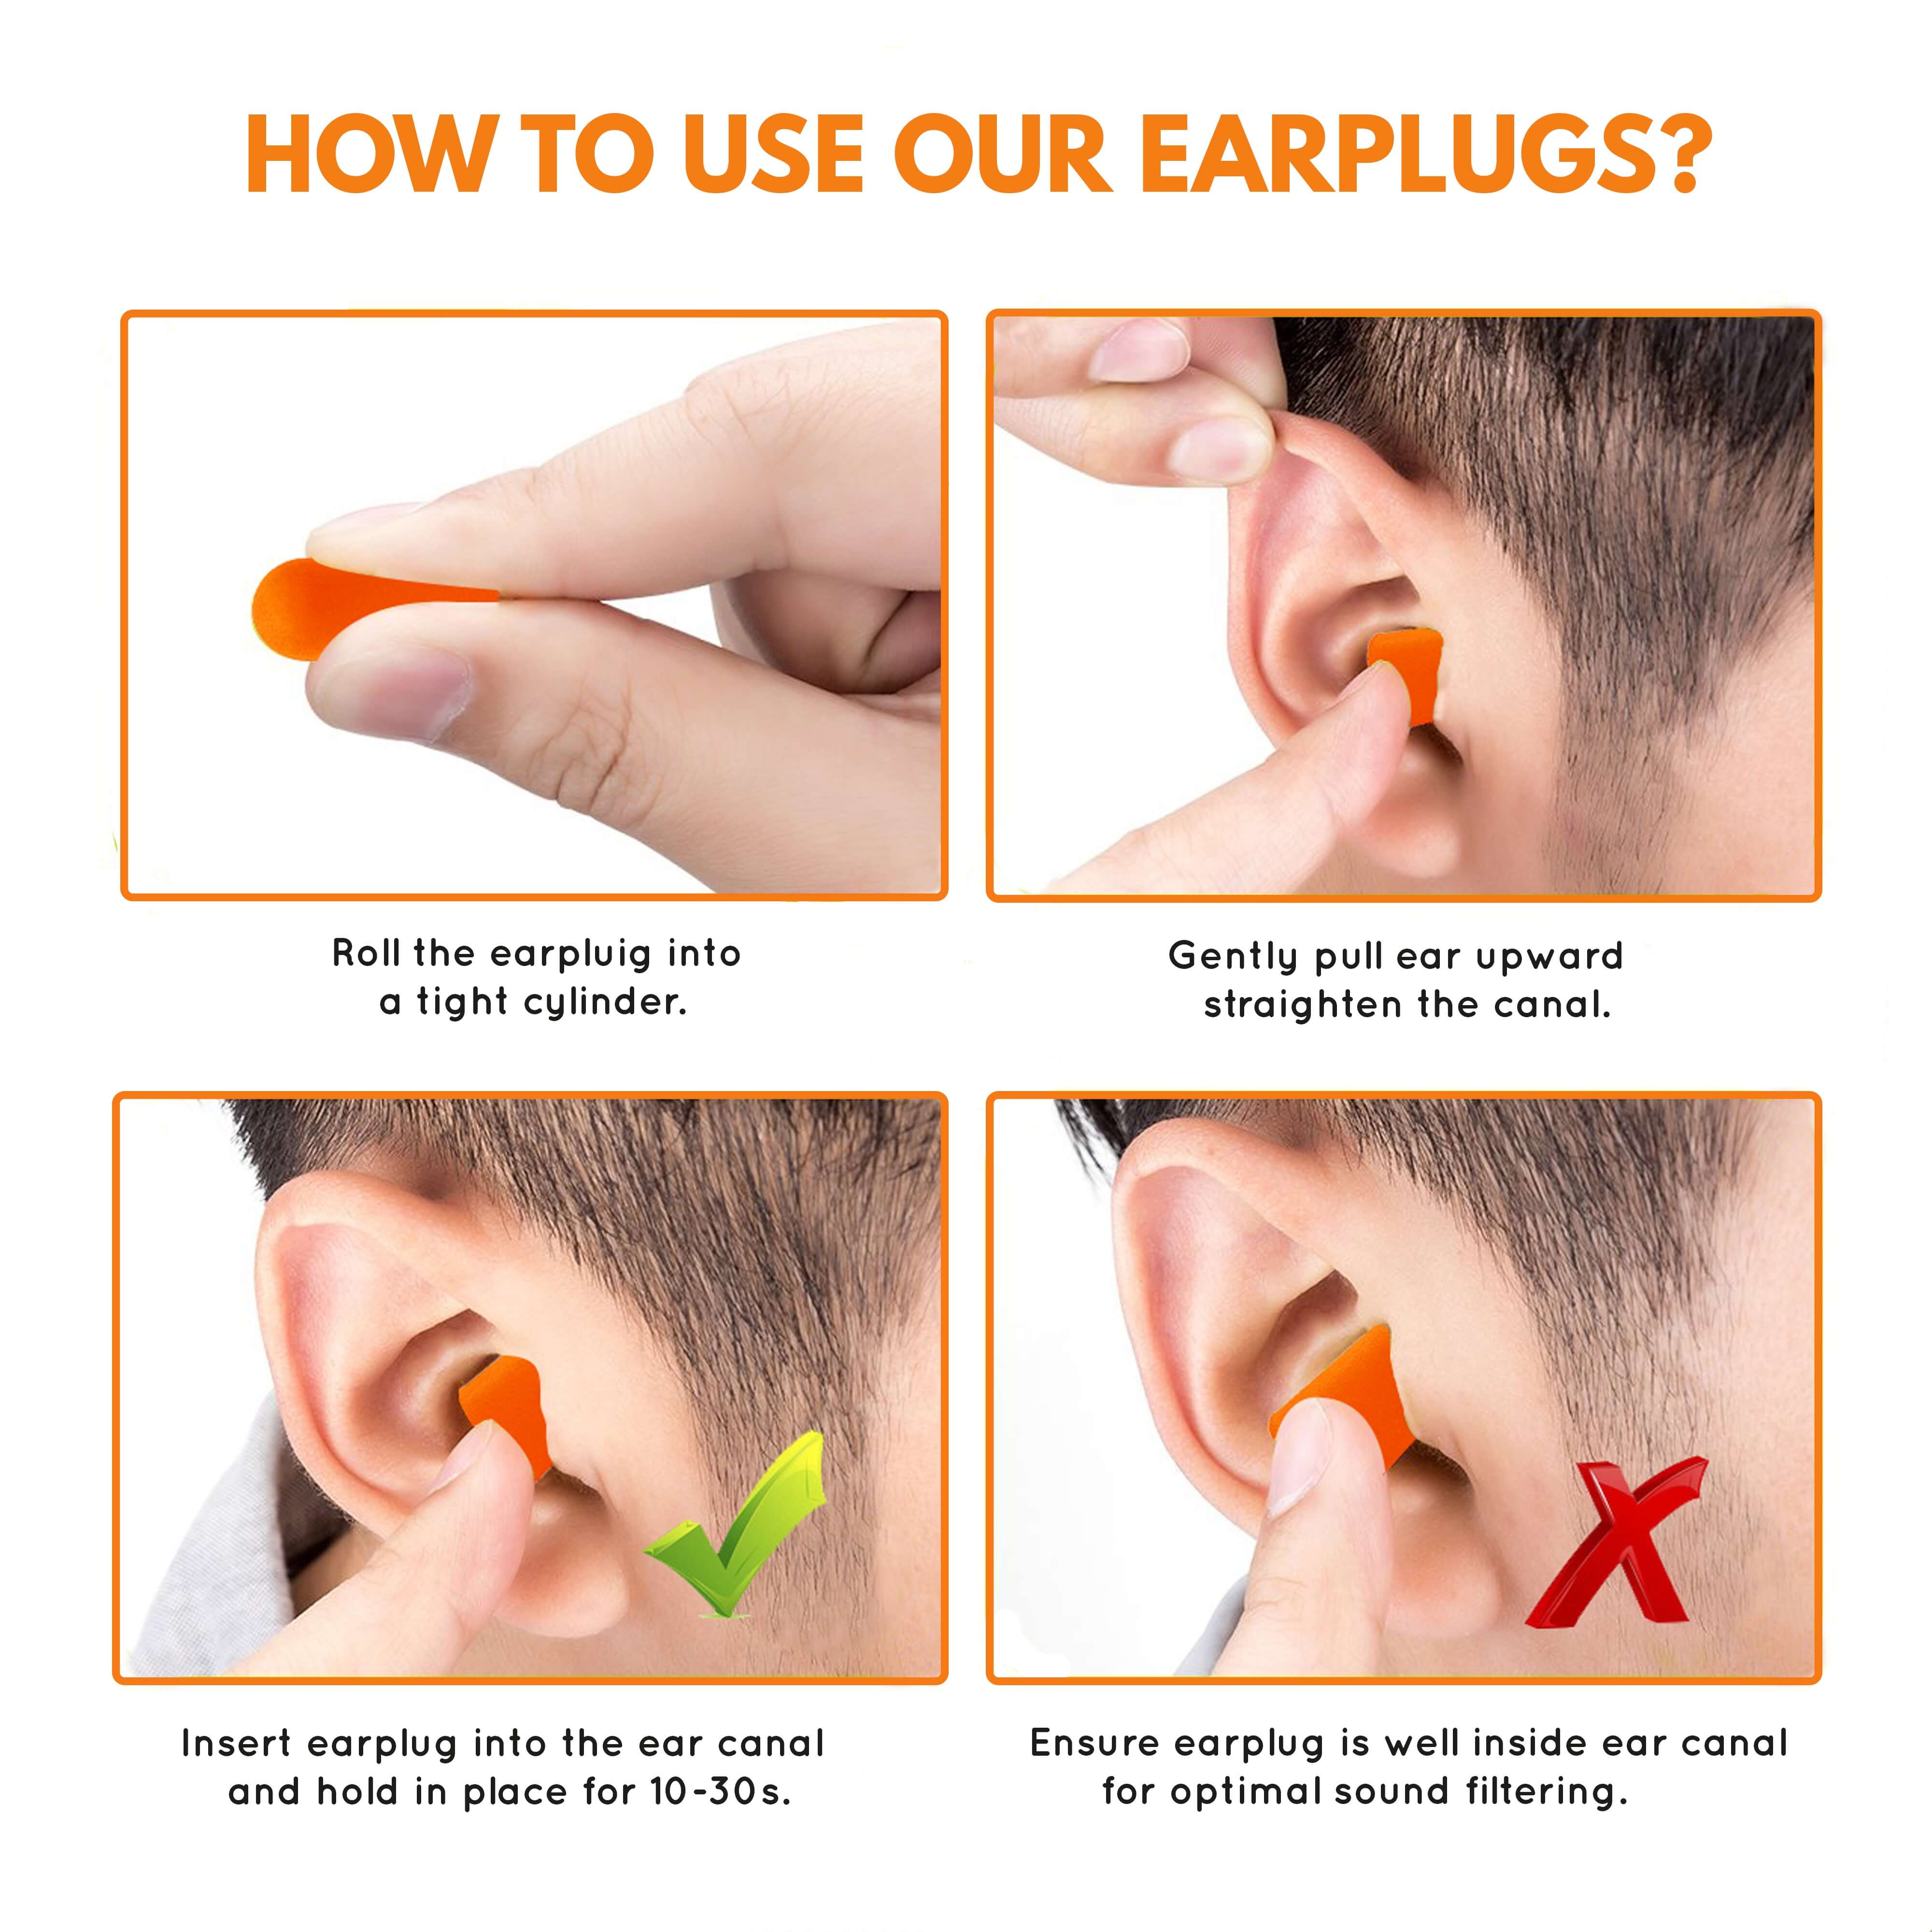 Es malo dormir con tapones para los oídos?